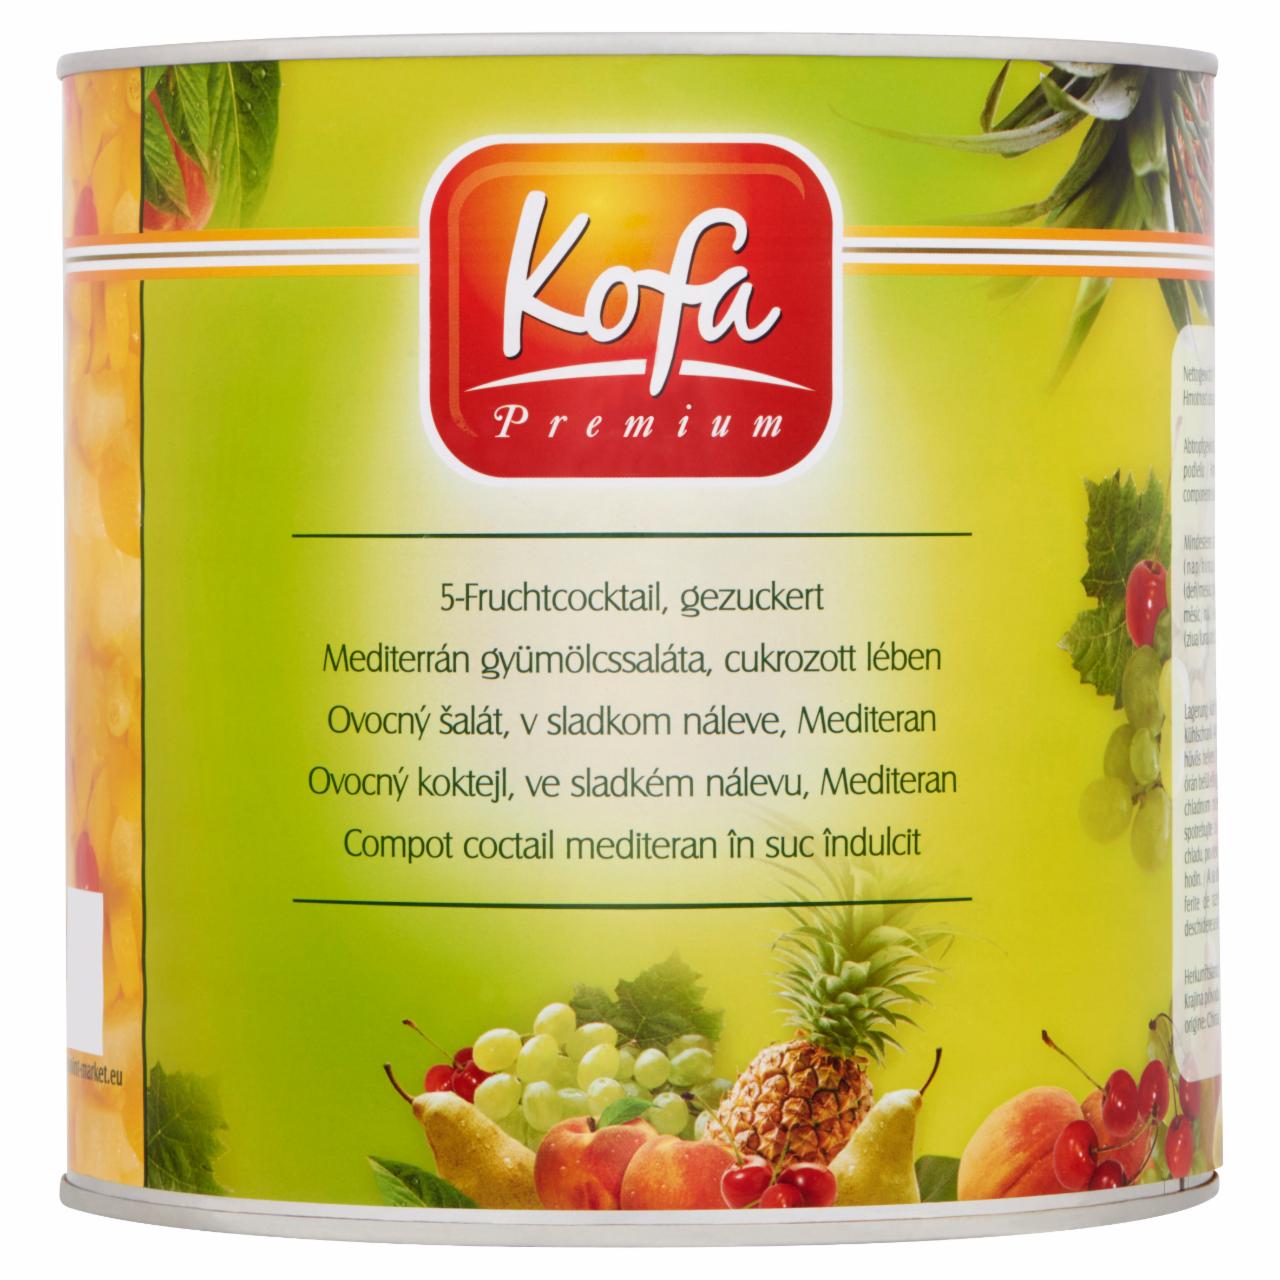 Képek - Kofa Premium mediterrán gyümölcssaláta cukrozott lében 2500 g